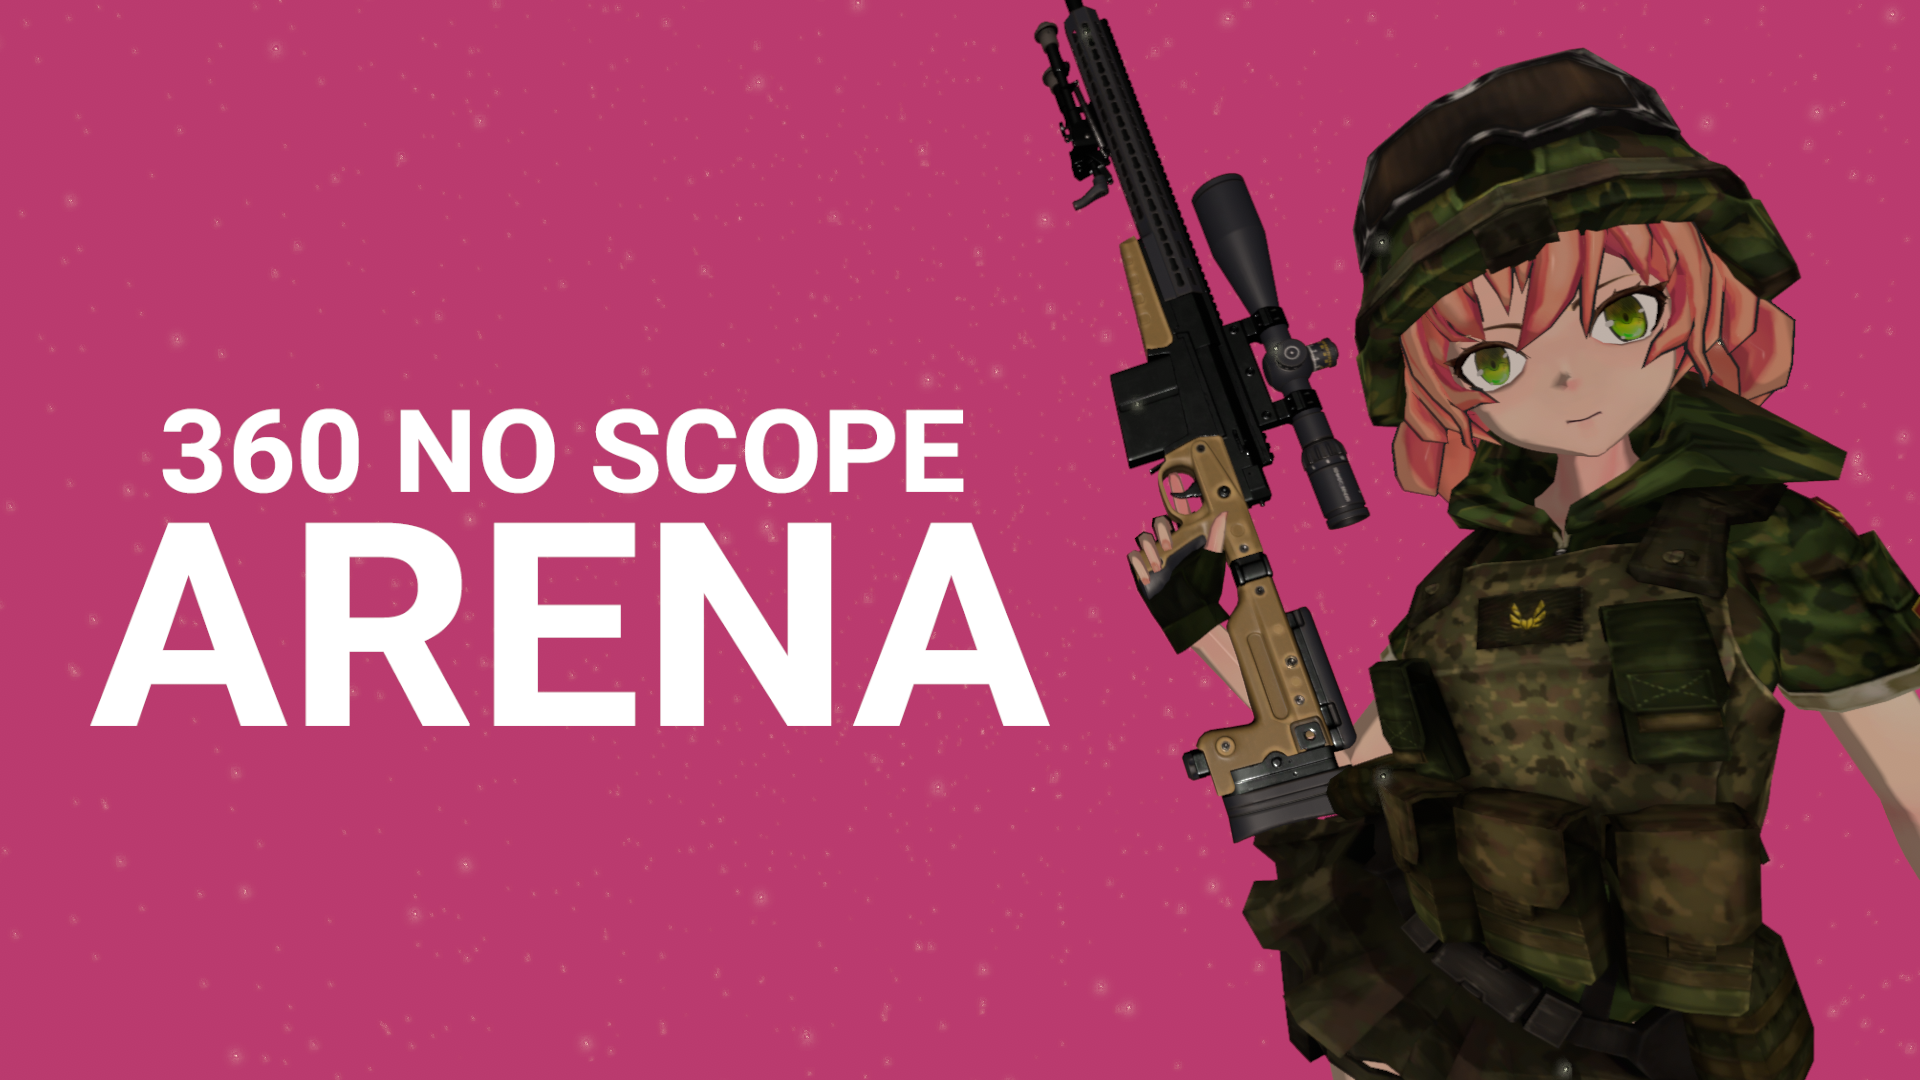 Non scope. 360 NOSCOPE. 360 No scope. No scope Arena. 420 No scope.